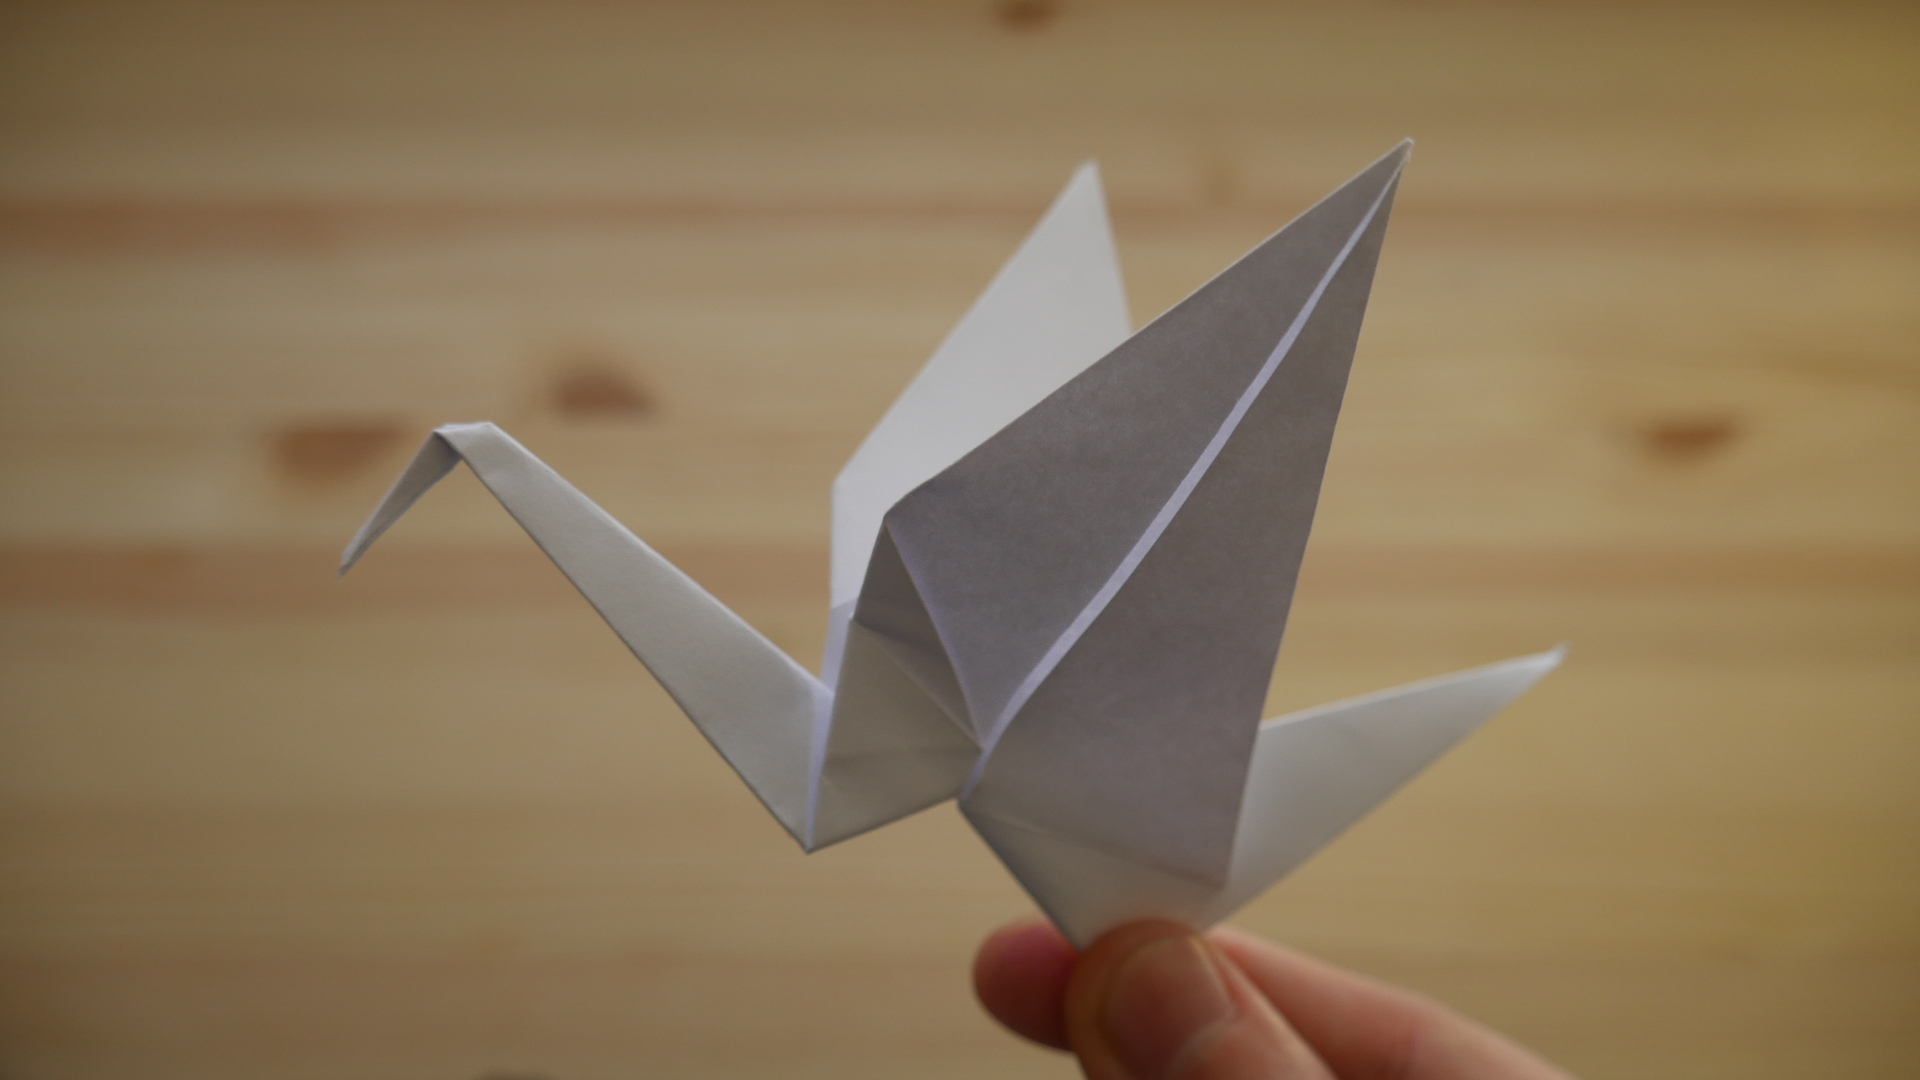 Оригами. Как сделать журавля из бумаги (видео урок)